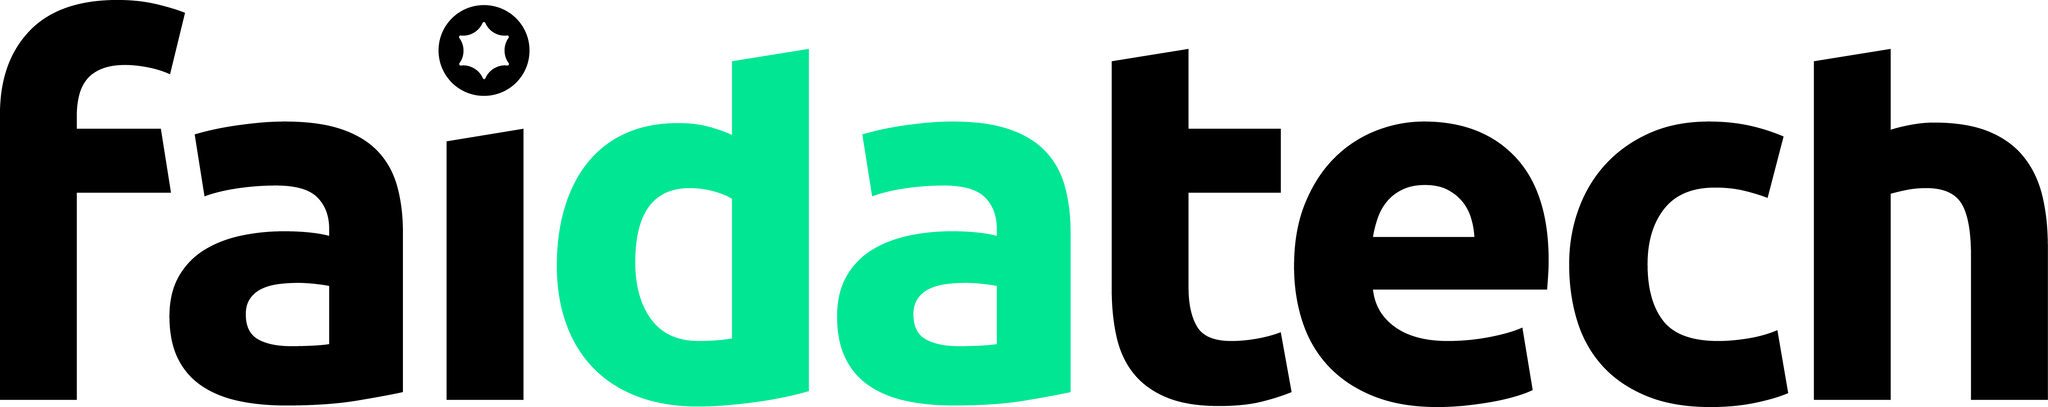 Logo Faidatech